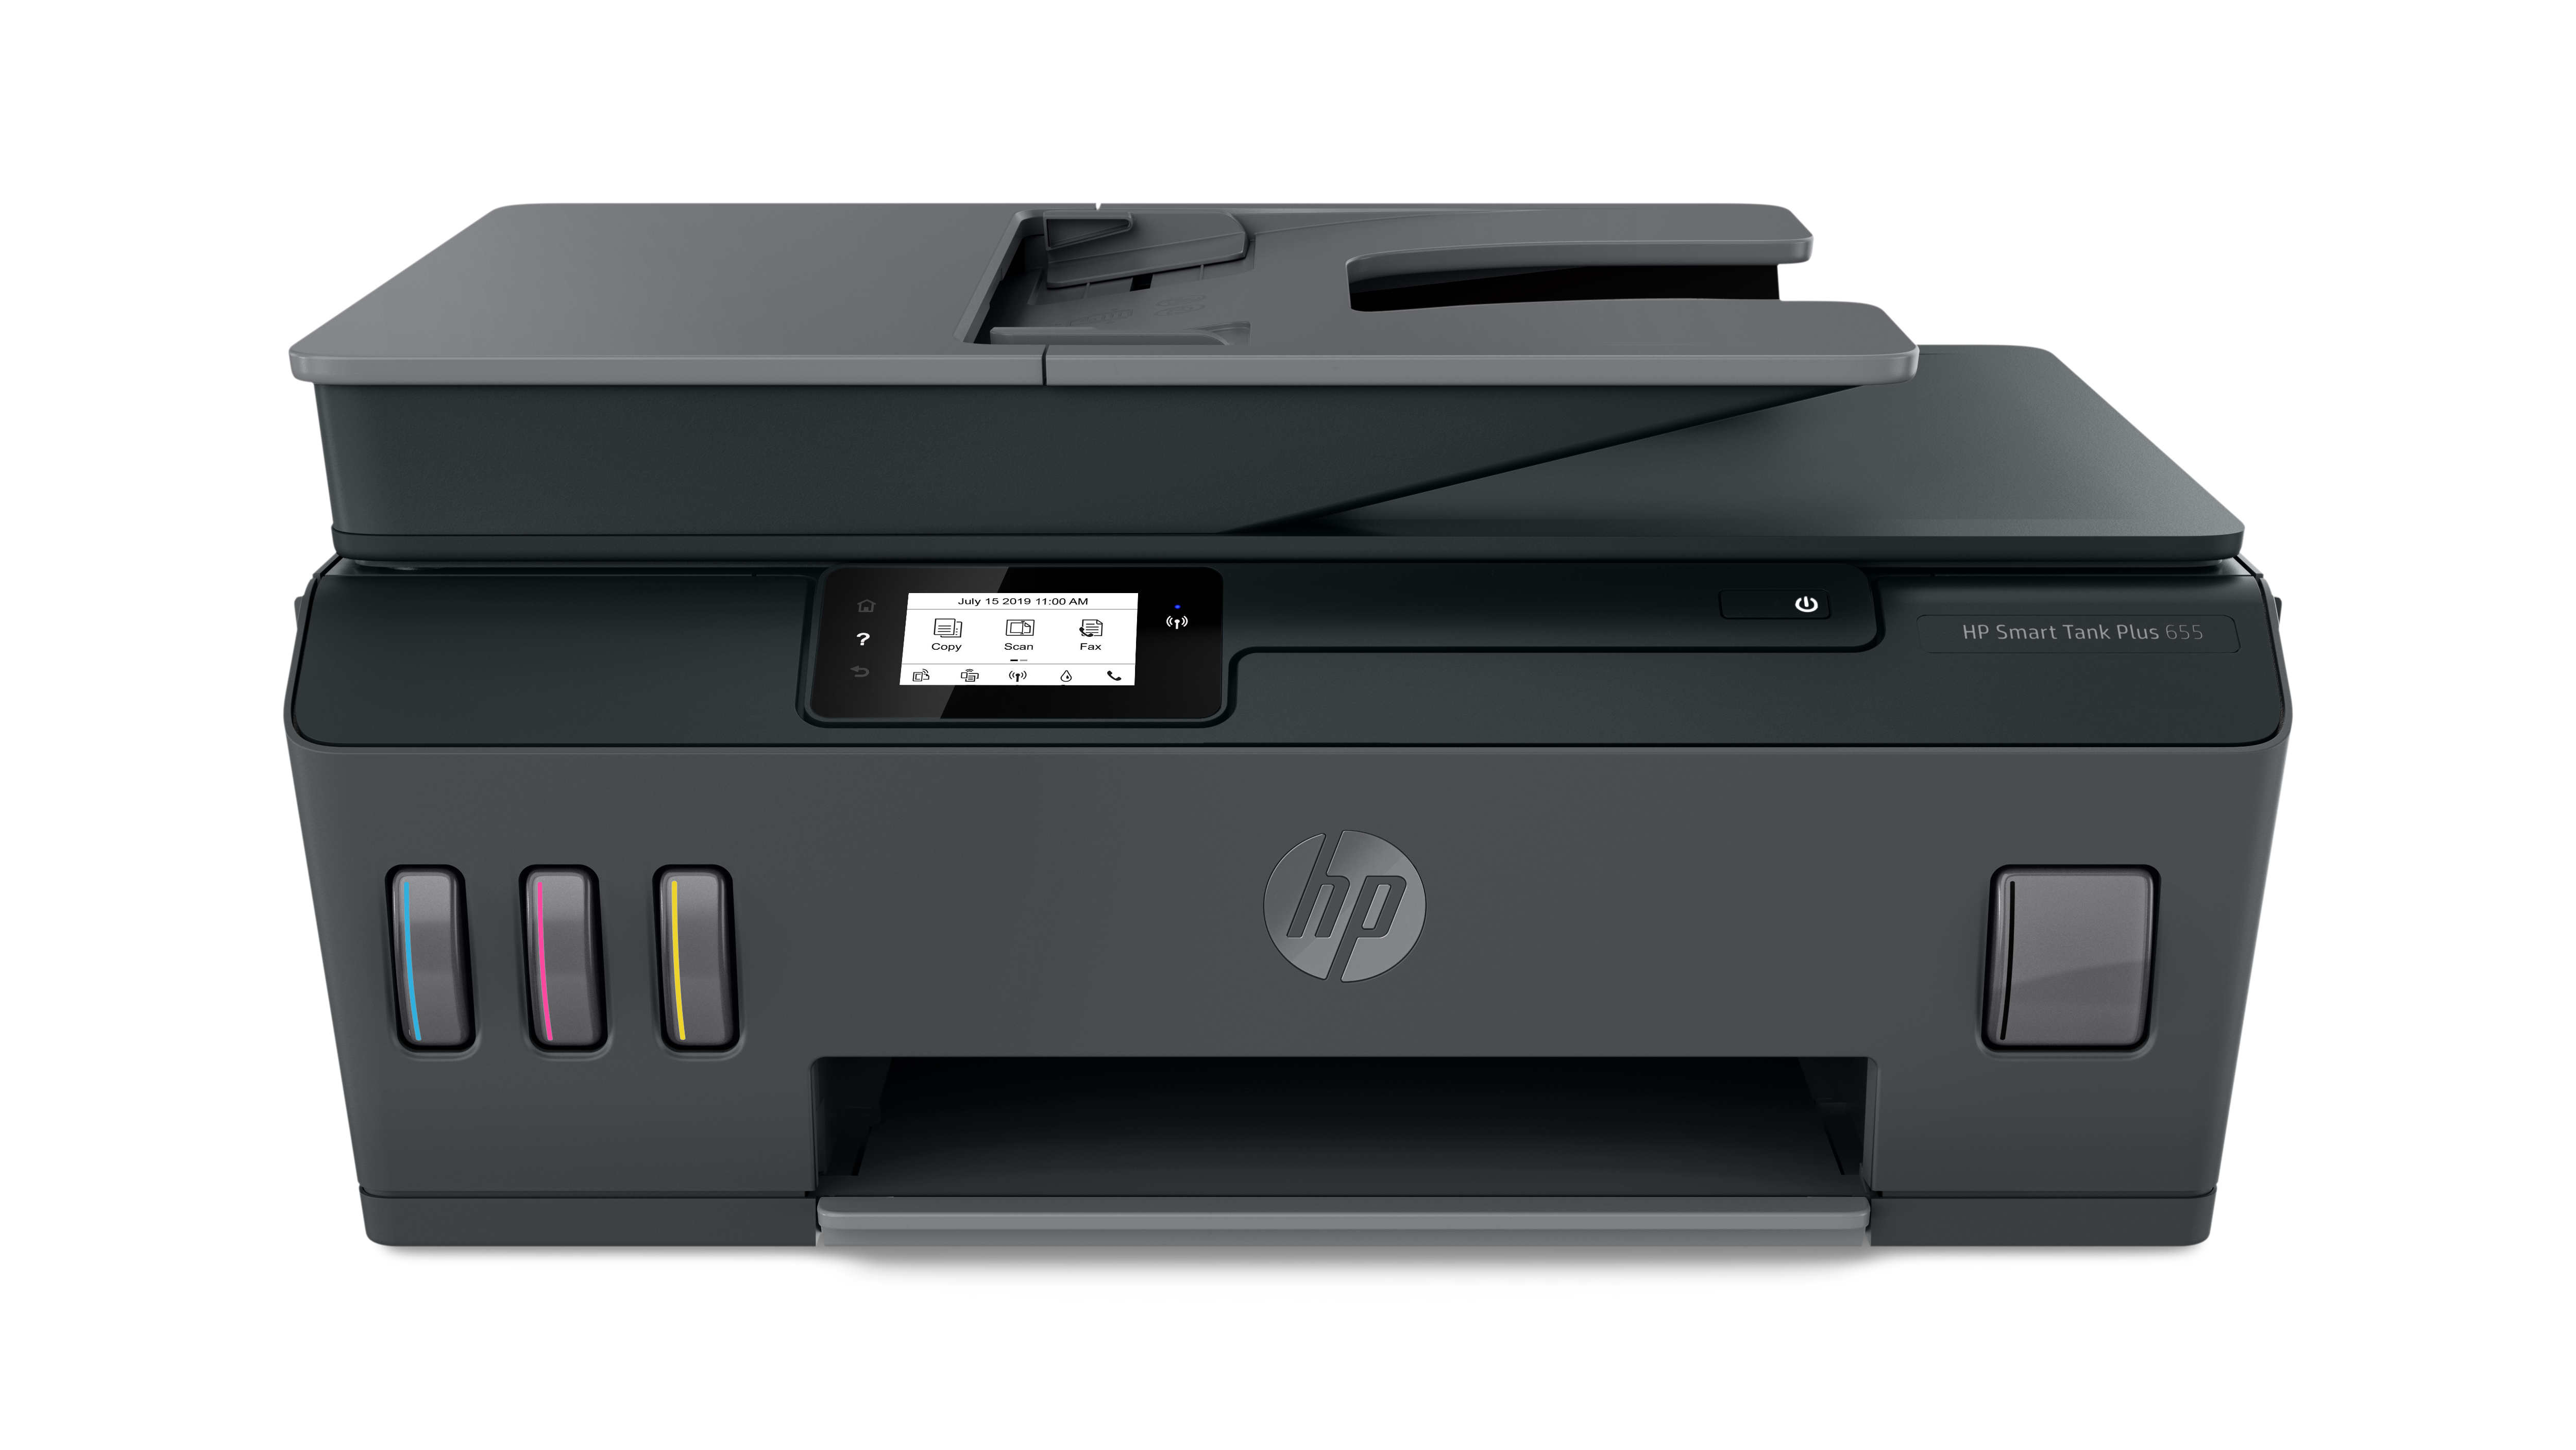 HP SMART TANK PLUS 655 STAMPANTE MULTIFUNZIONE INK-JET A4 WI-FI 11ppm 4800 X 1200 DPI